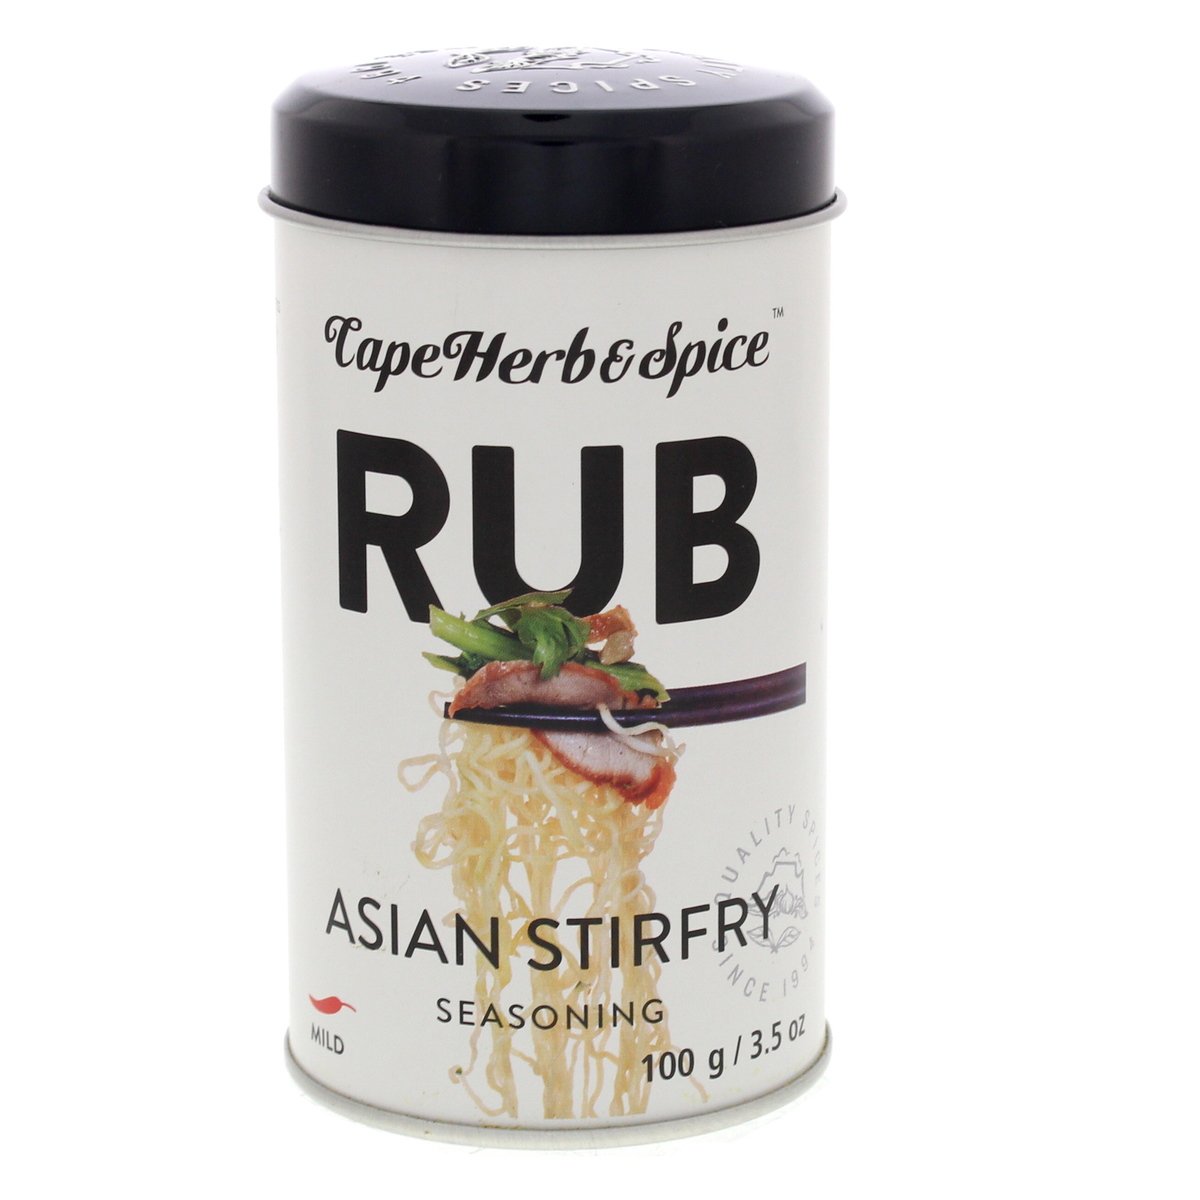 CapeHerb&Spice Rub Asian Stir Fry Seasoning 100g